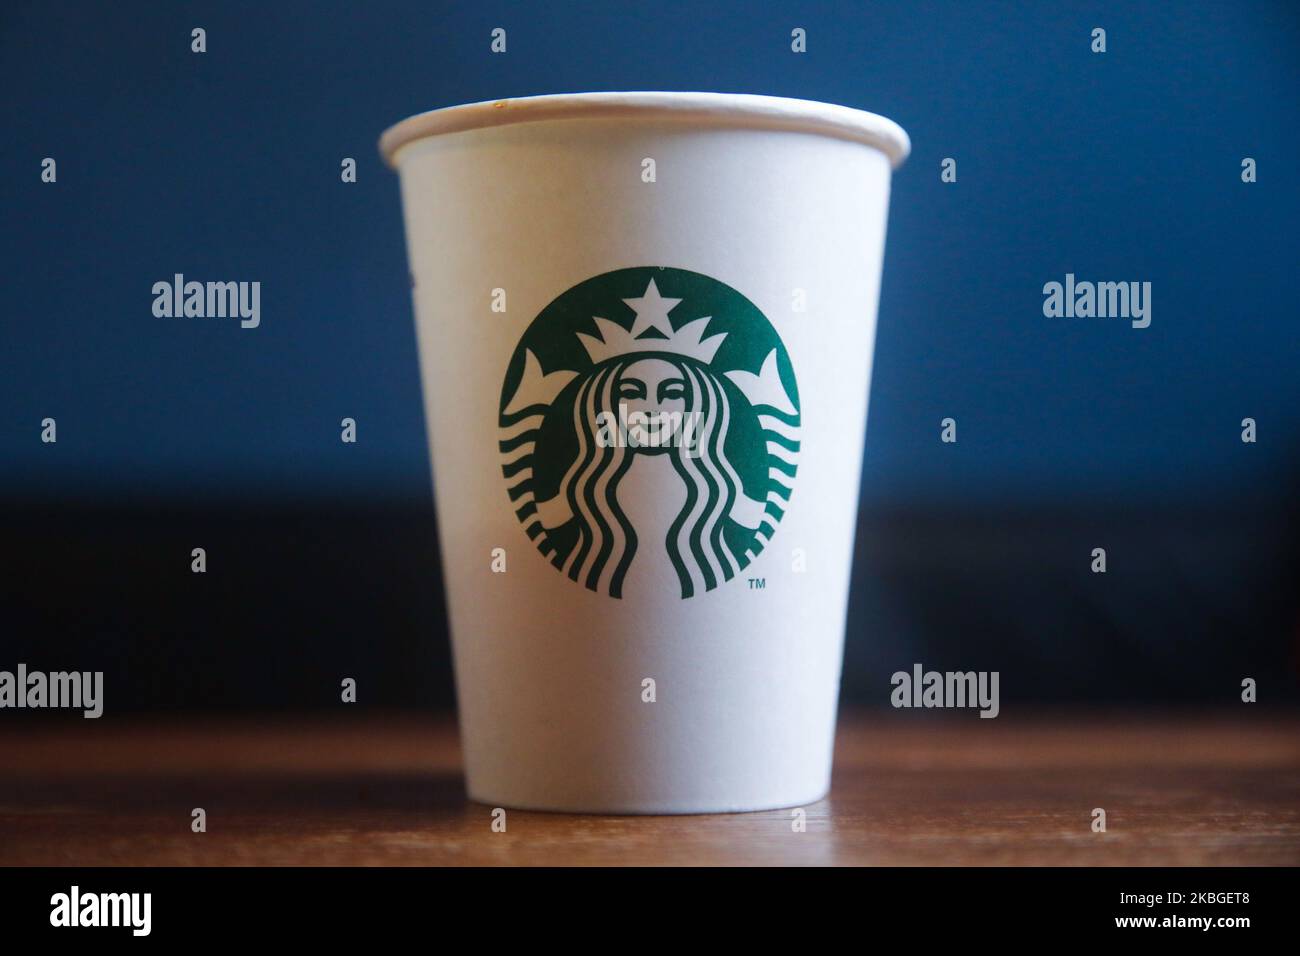 El logotipo de Starbucks se ve en una taza de café de papel desechable en esta foto ilustrativa tomada en Cracovia, Polonia, el 4 de febrero de 2020. (Foto de Jakub Porzycki/NurPhoto) Foto de stock